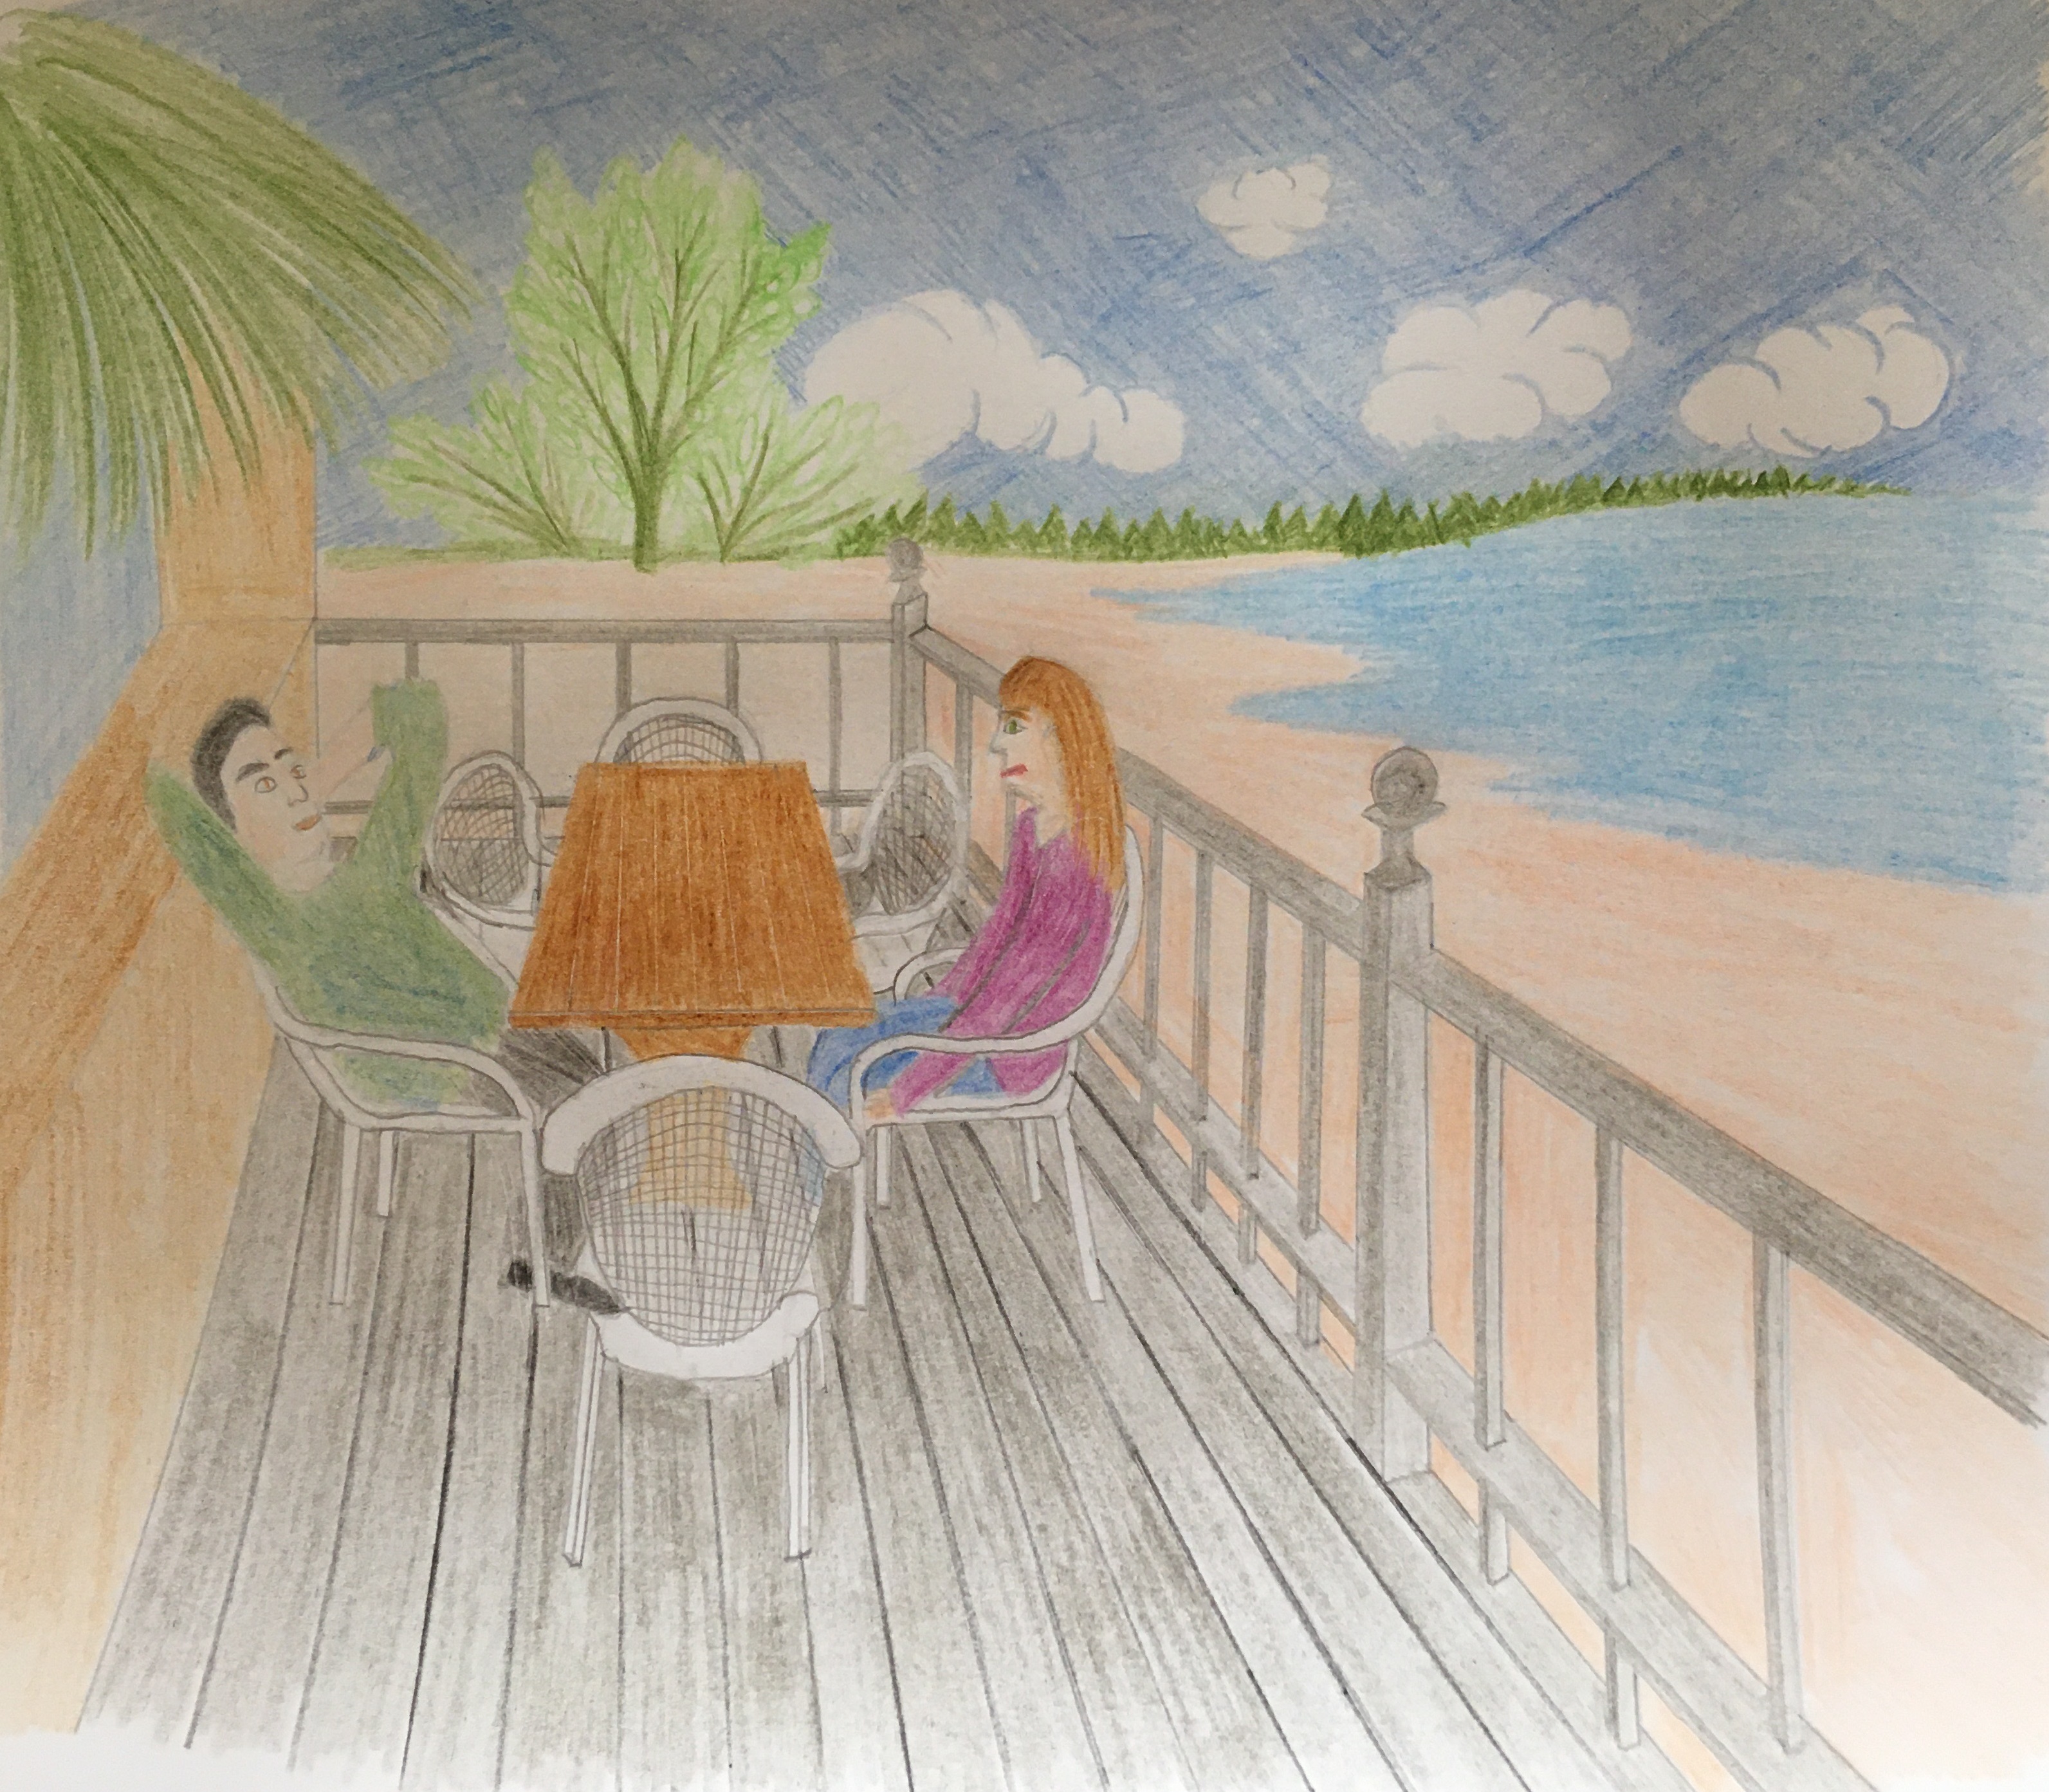 Auf einer Holzterrasse mit Geländer und Blick aufs Meer sitzen sich auf weißen Gartenstühlen an einem Tisch Minerva und Jonatan gegenüber. Jonatan hat sich entspannt zurück gelehnt, während Minerva einen etwas verkniffenen Gesichtsausdruck hat. Im Hintergrund sieht man den Strand und einen kleinen Wald.